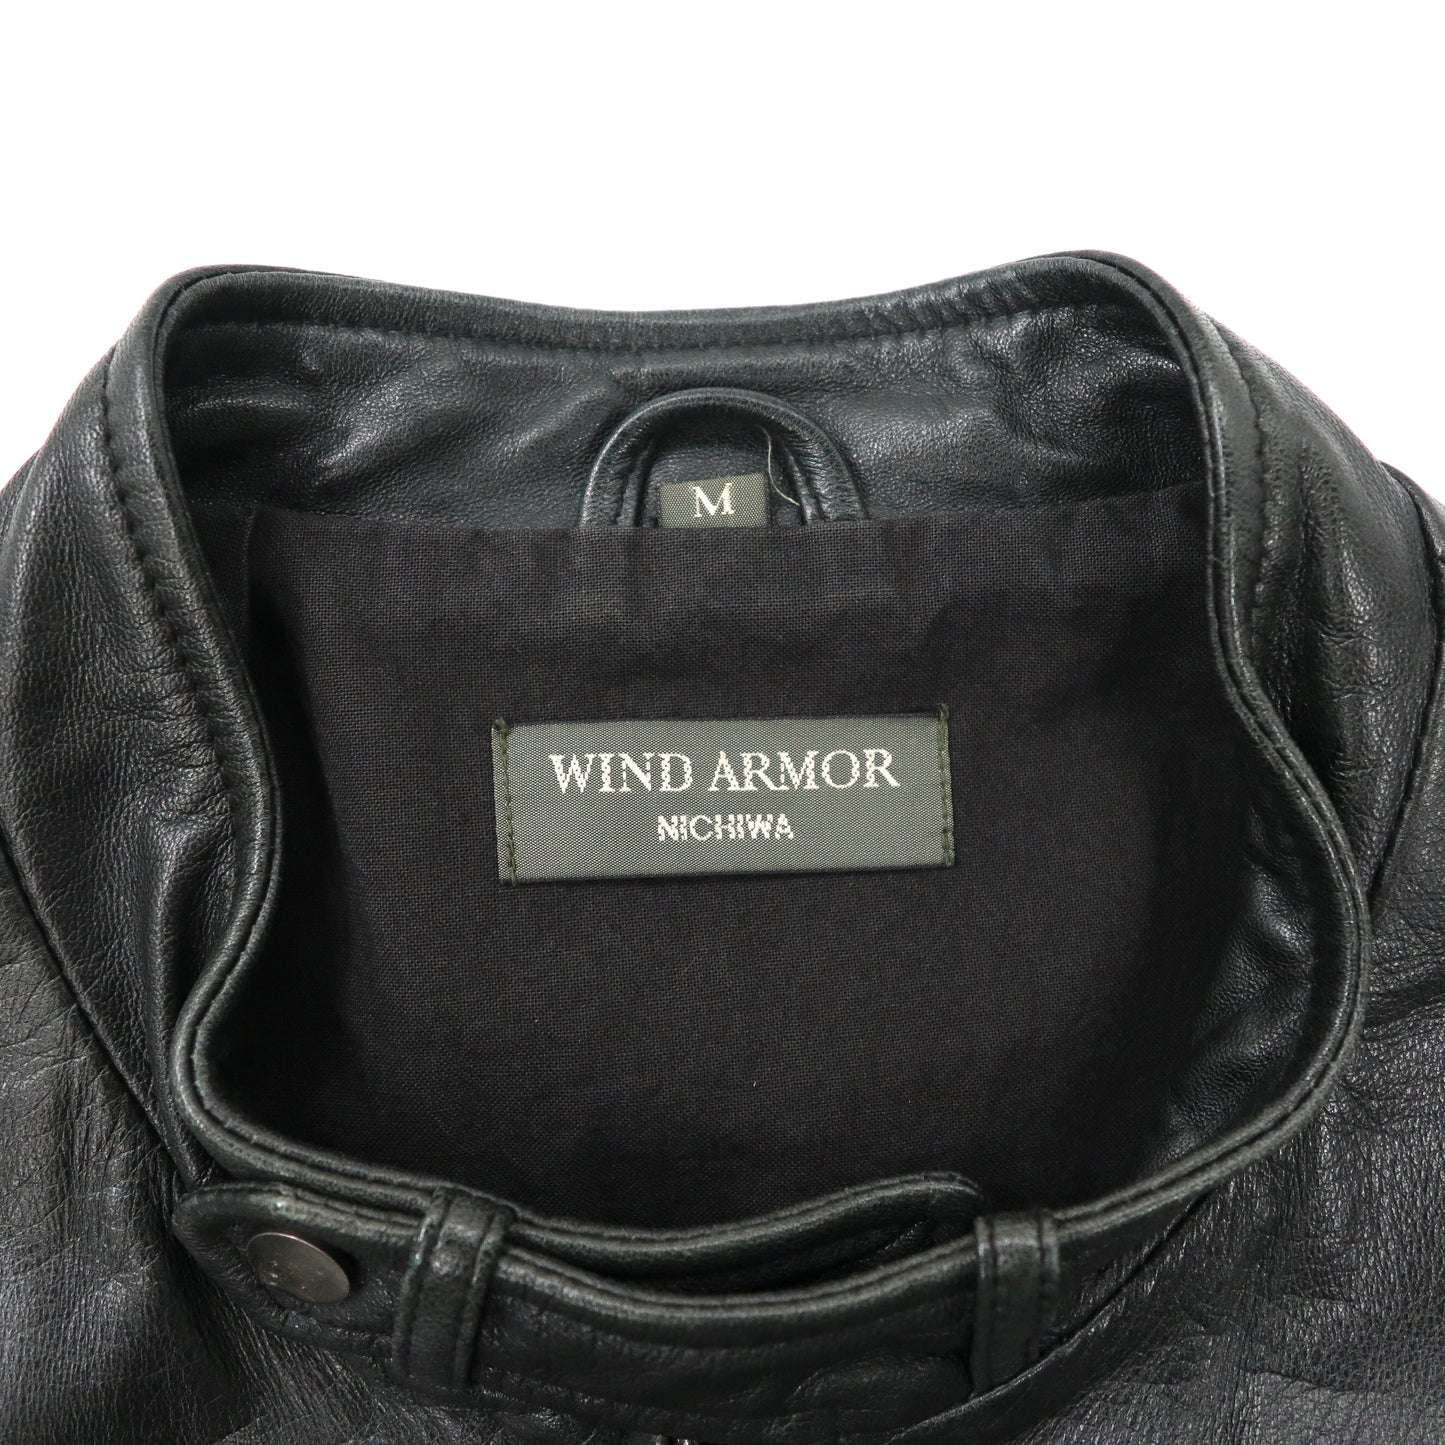 Wind Armor Single Riders Jacket M Black Italian Lamb Leather Japan